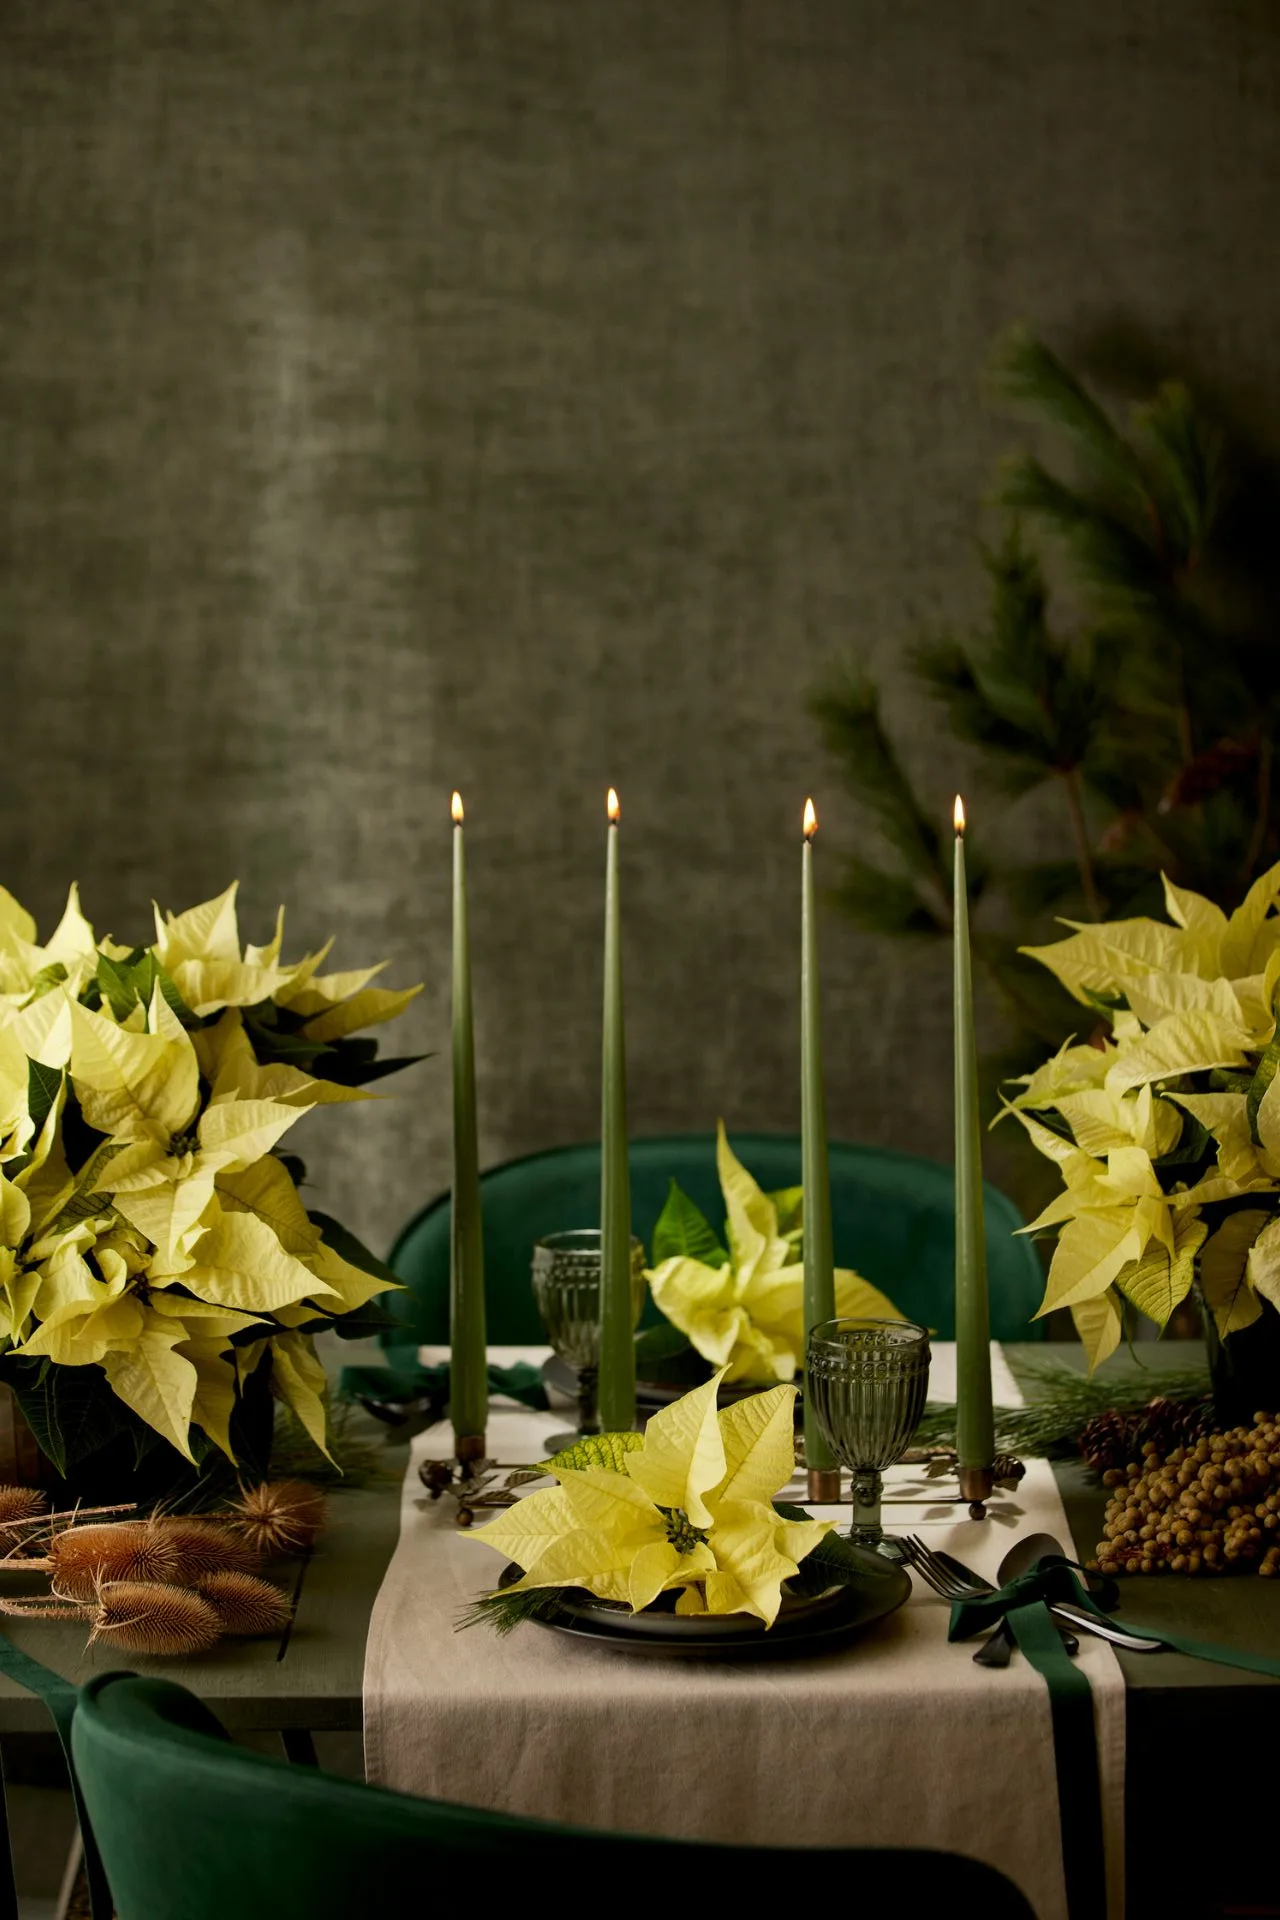 4 ιδέες διακόσμησης για το γιορτινό τραπέζι των Χριστουγέννων με Αλεξανδρινά